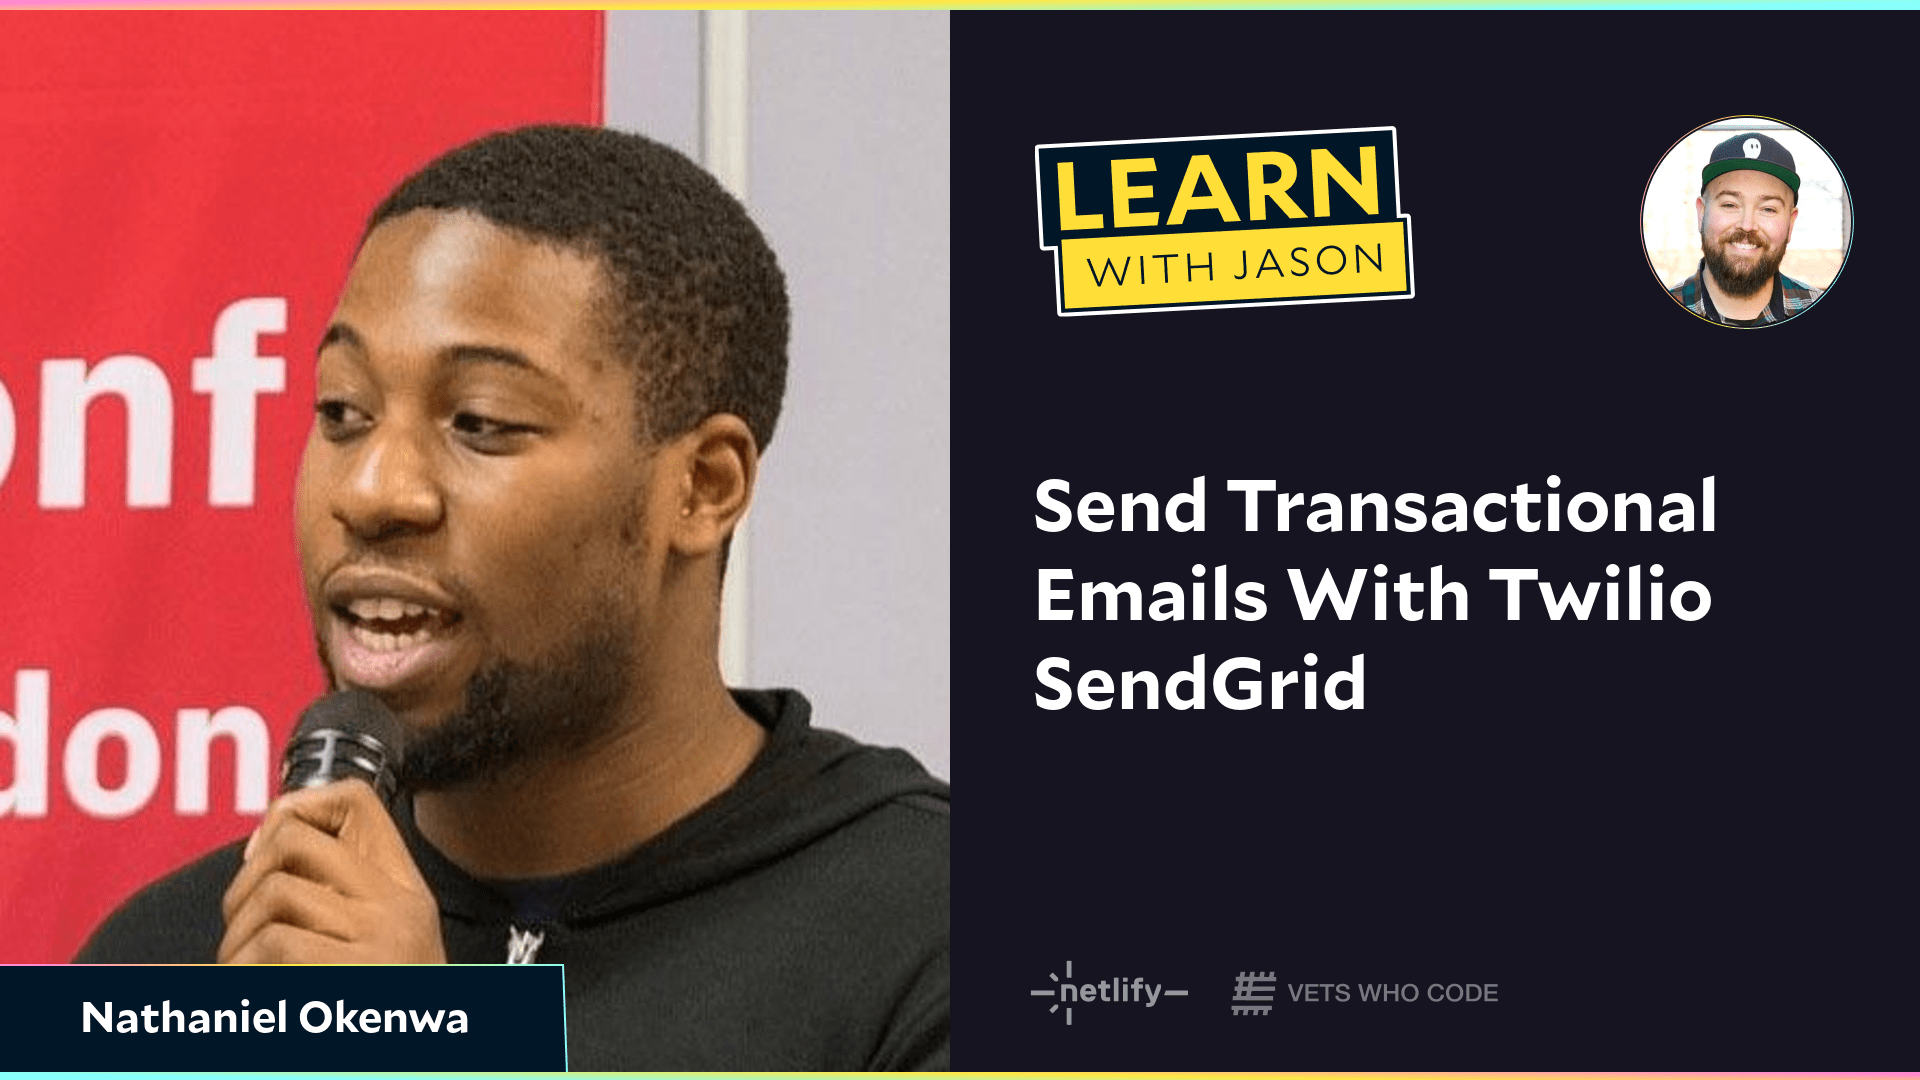 Send Transactional Emails With Twilio SendGrid (with Nathaniel Okenwa)